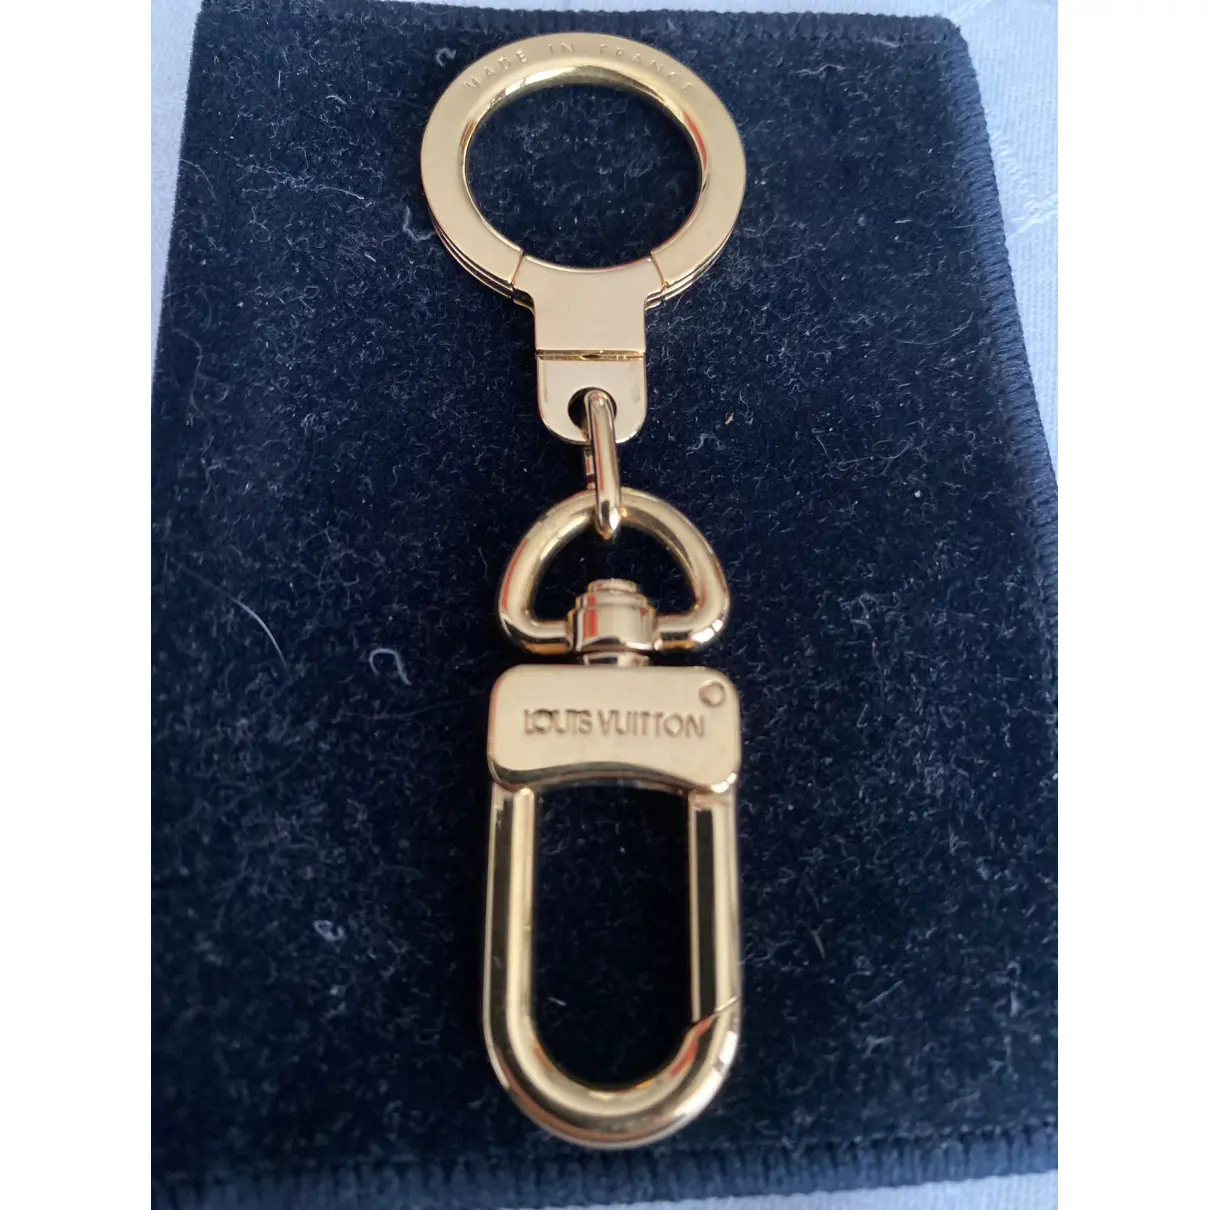 Buy Louis Vuitton Key ring online